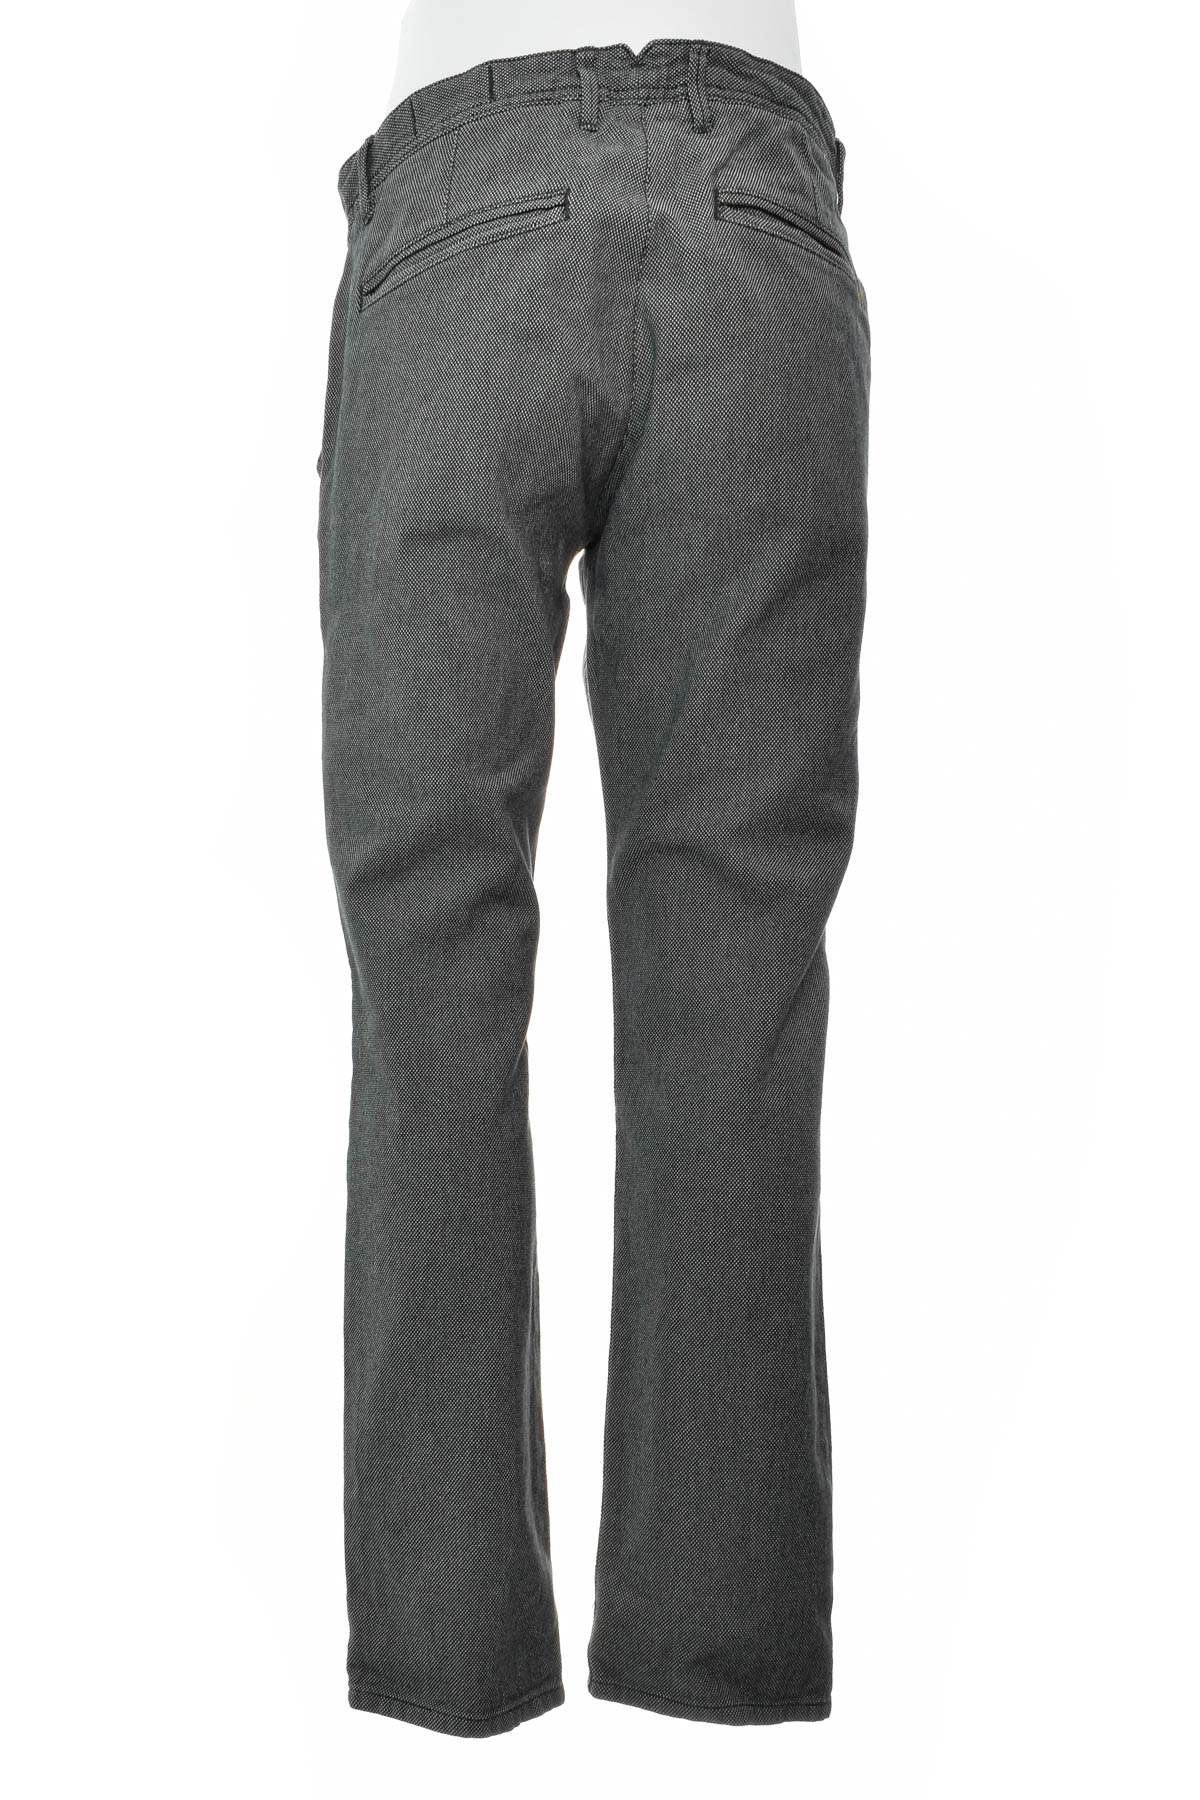 Men's trousers - TOM TAILOR Denim - 1